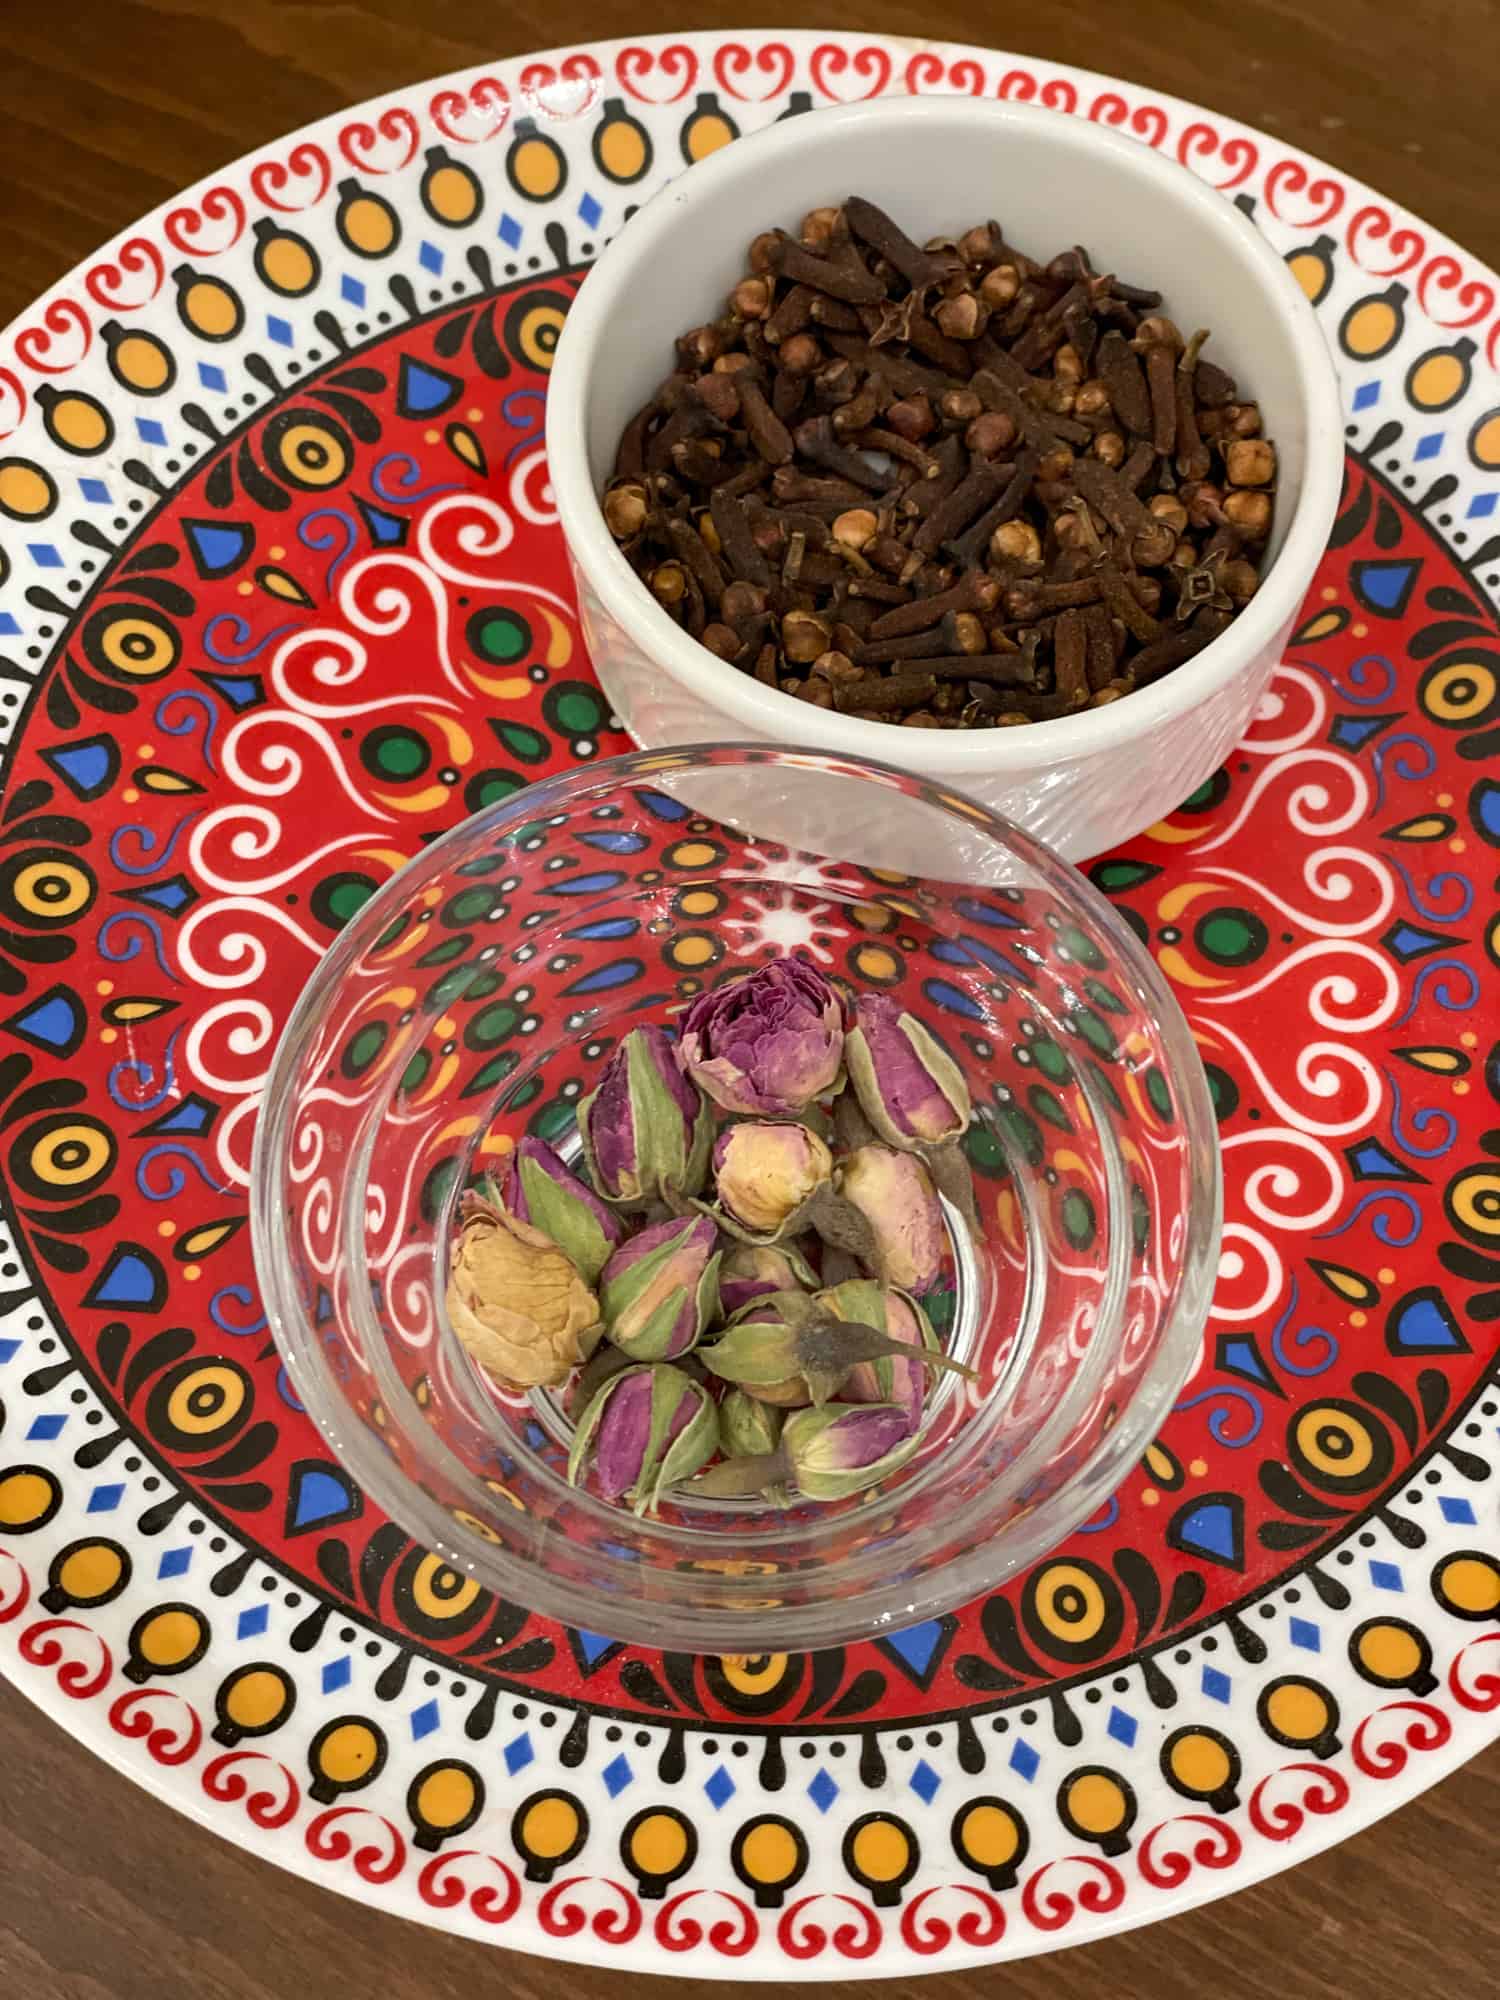 Kazakhstan Food - Cloves and rose buds for tea